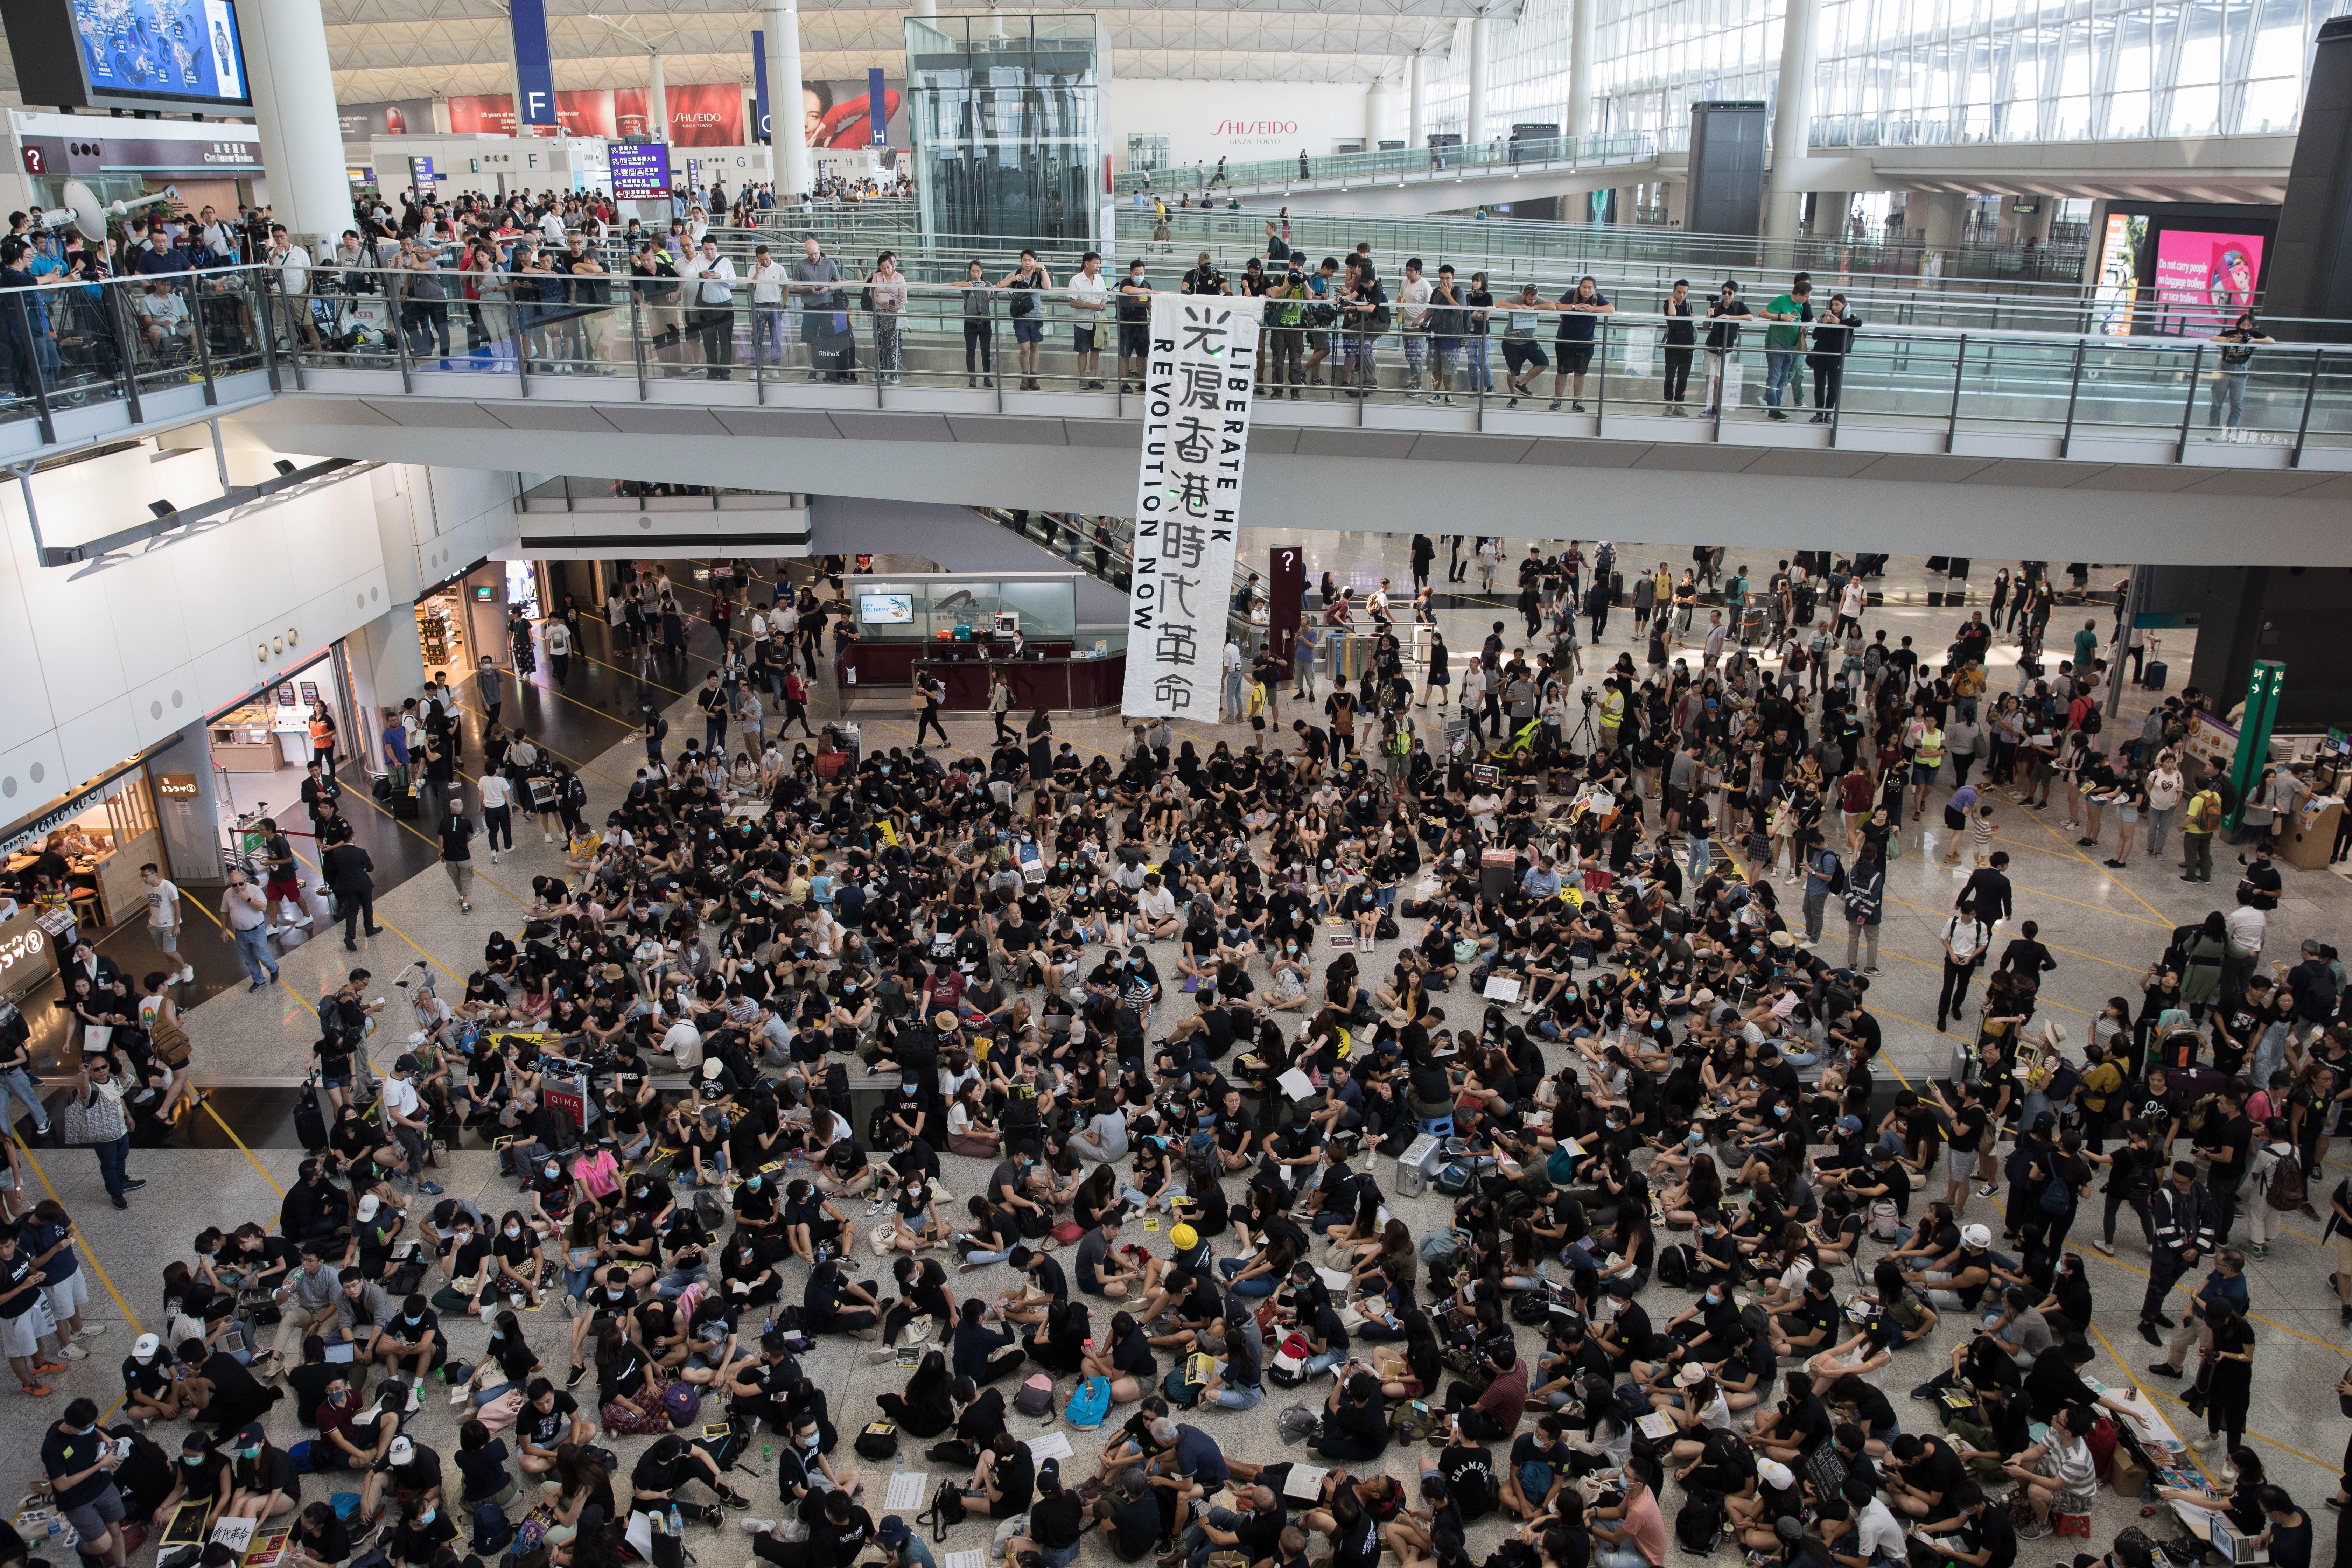 Ocupación masiva de manifestantes en el aeropuerto de Hong Kong